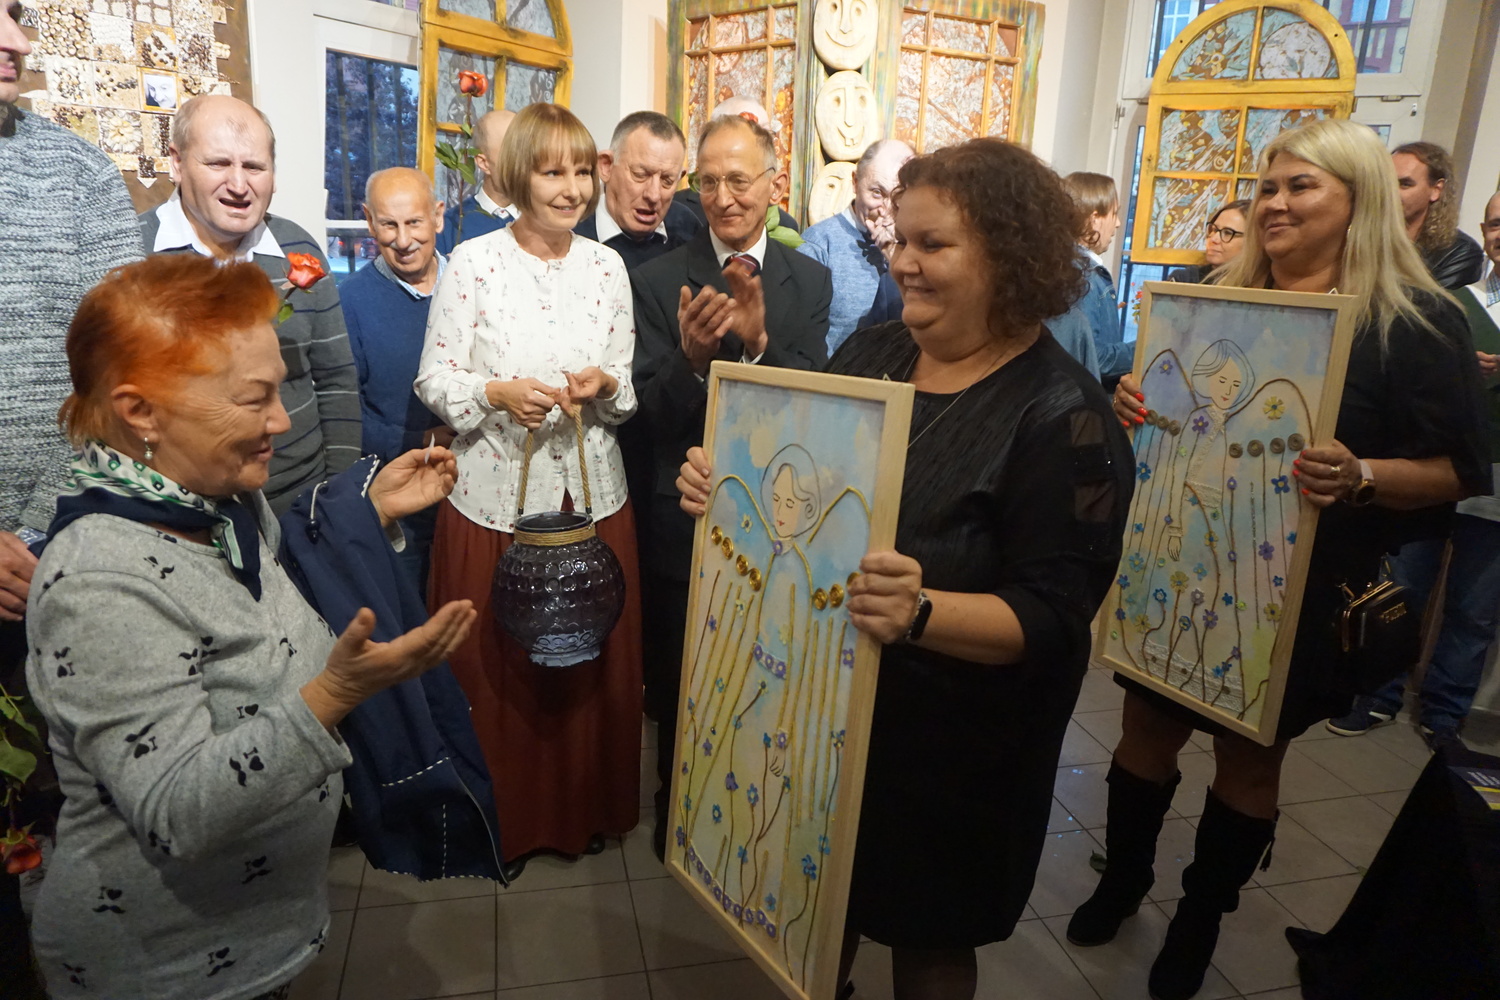 Kobieta stojąca na sali z rozłożonymi rękoma przed nią dwie inne osoby trzymające obrazy z aniołami. Jedna z nich wręcza obraz wygranej.